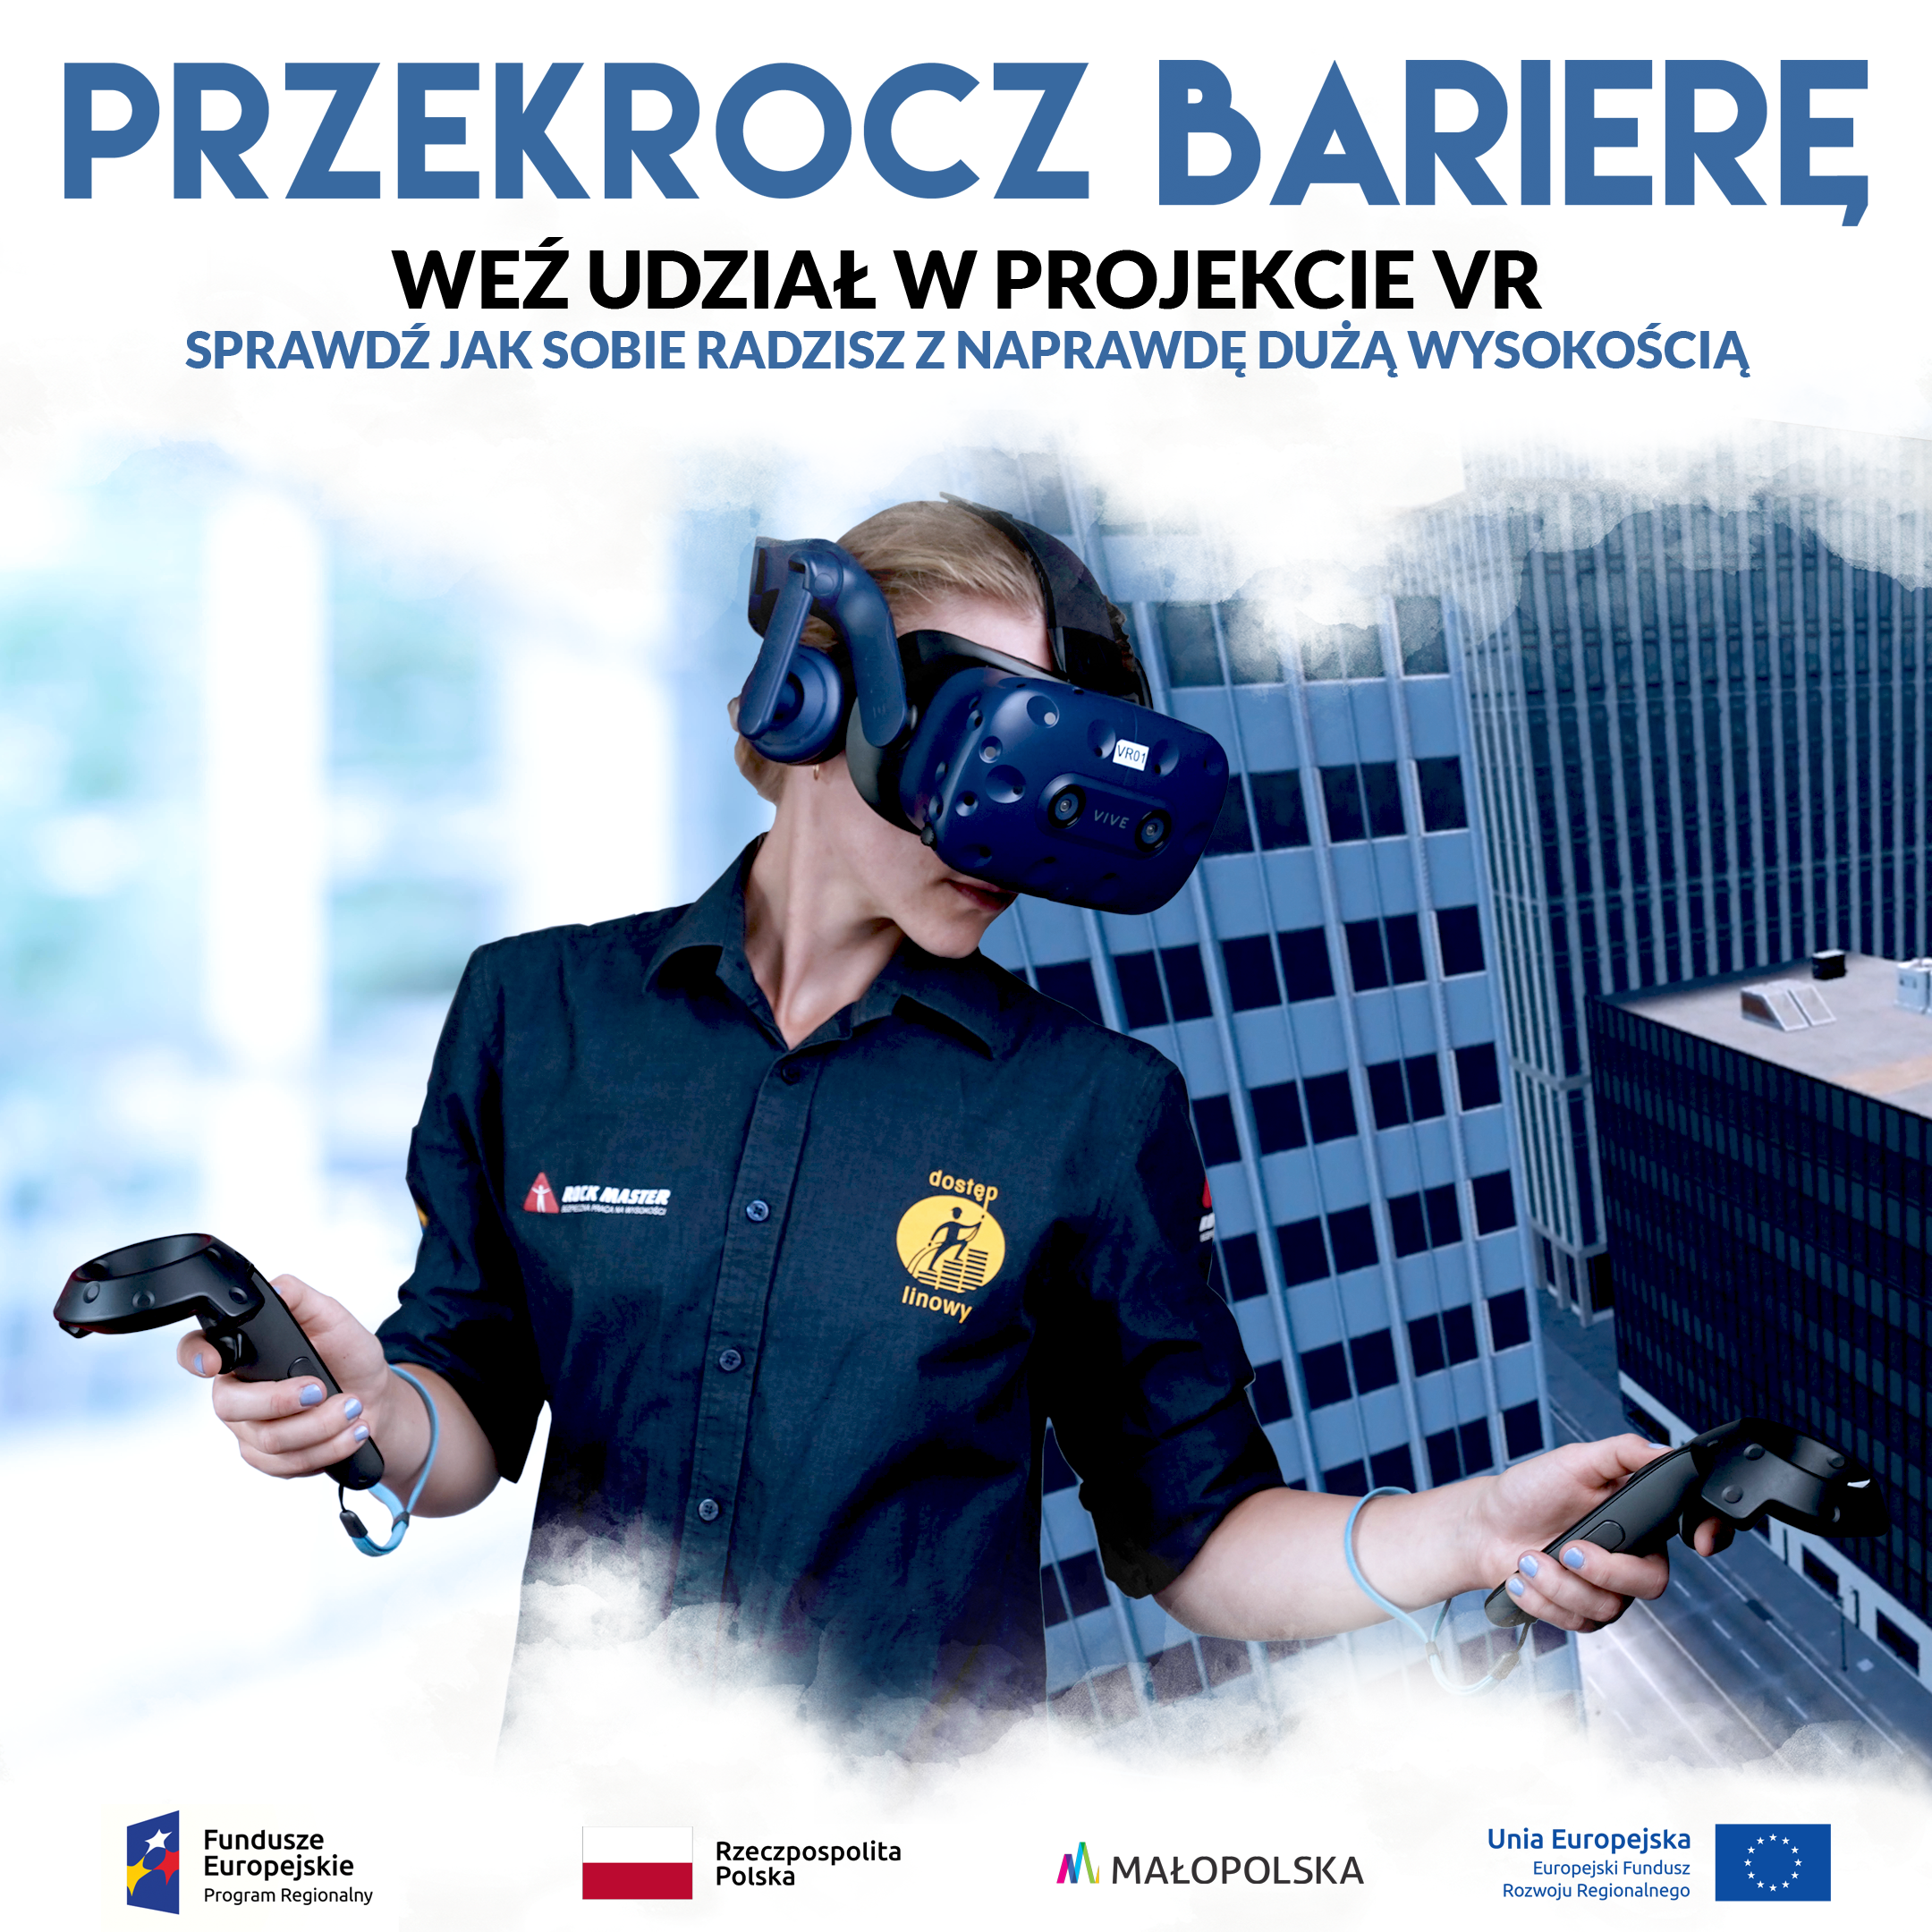 Projekt VR – Nabór trwa!